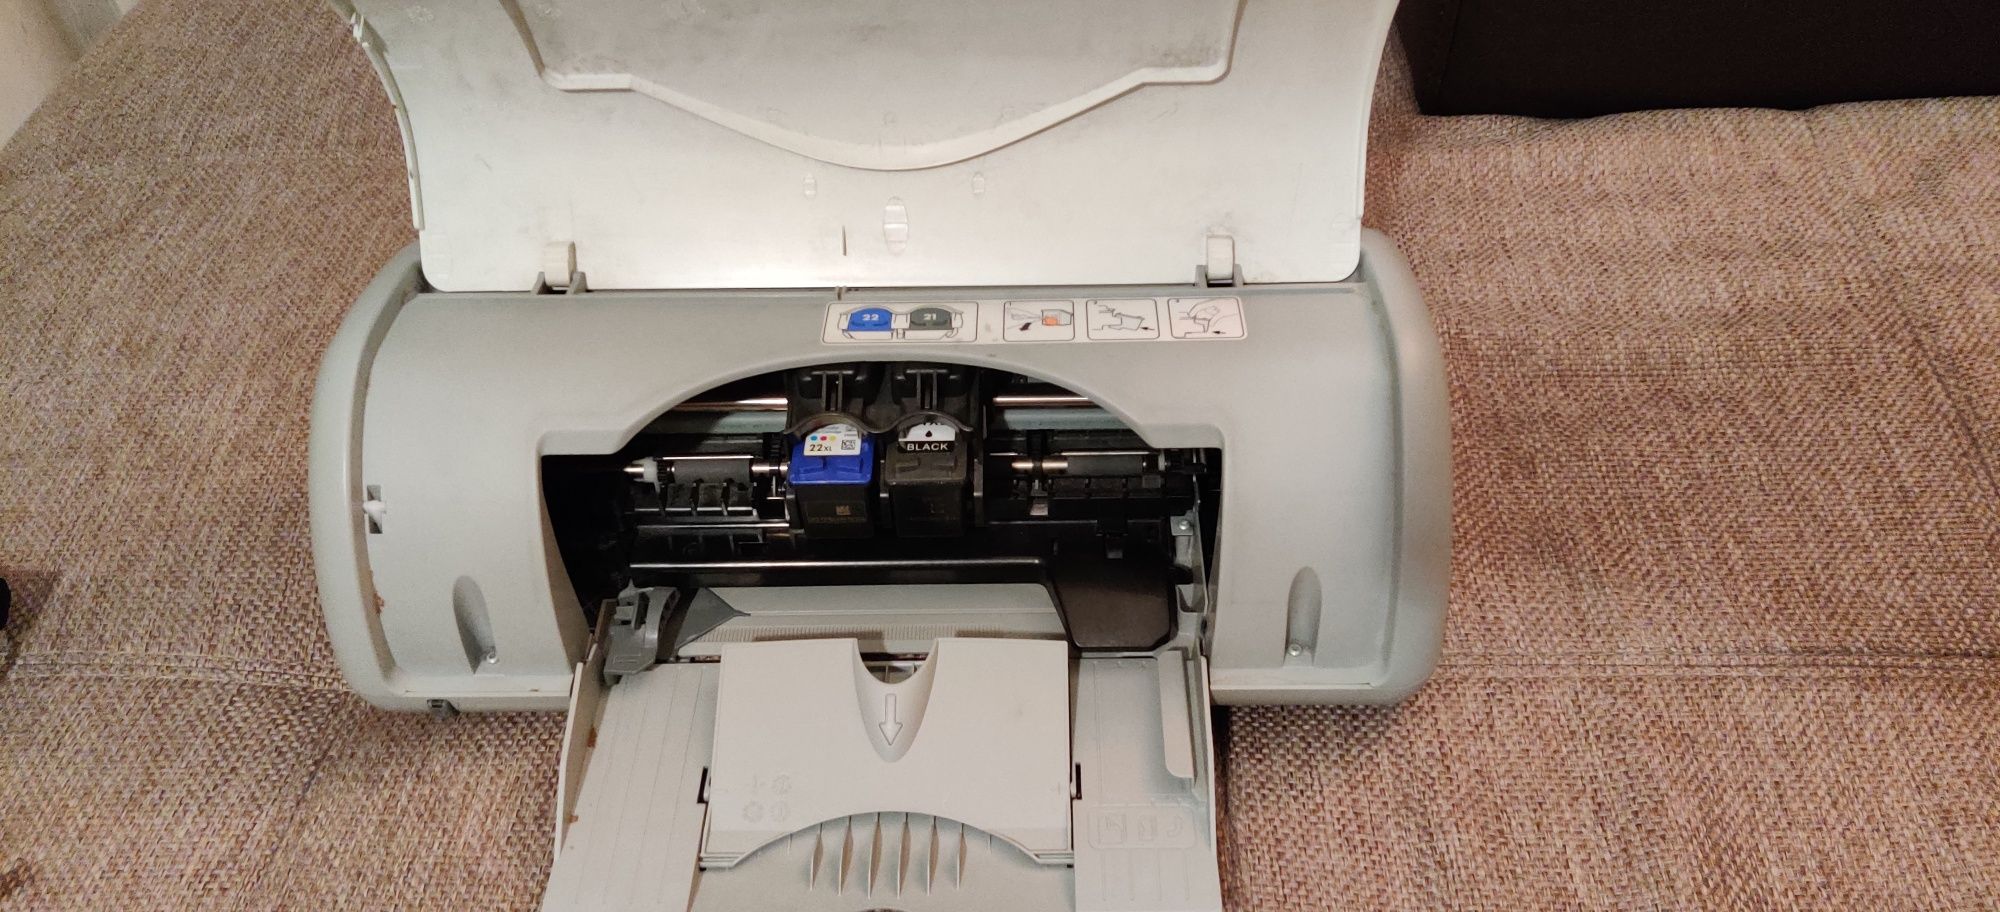 Imprimantă HP Deskjet D1360